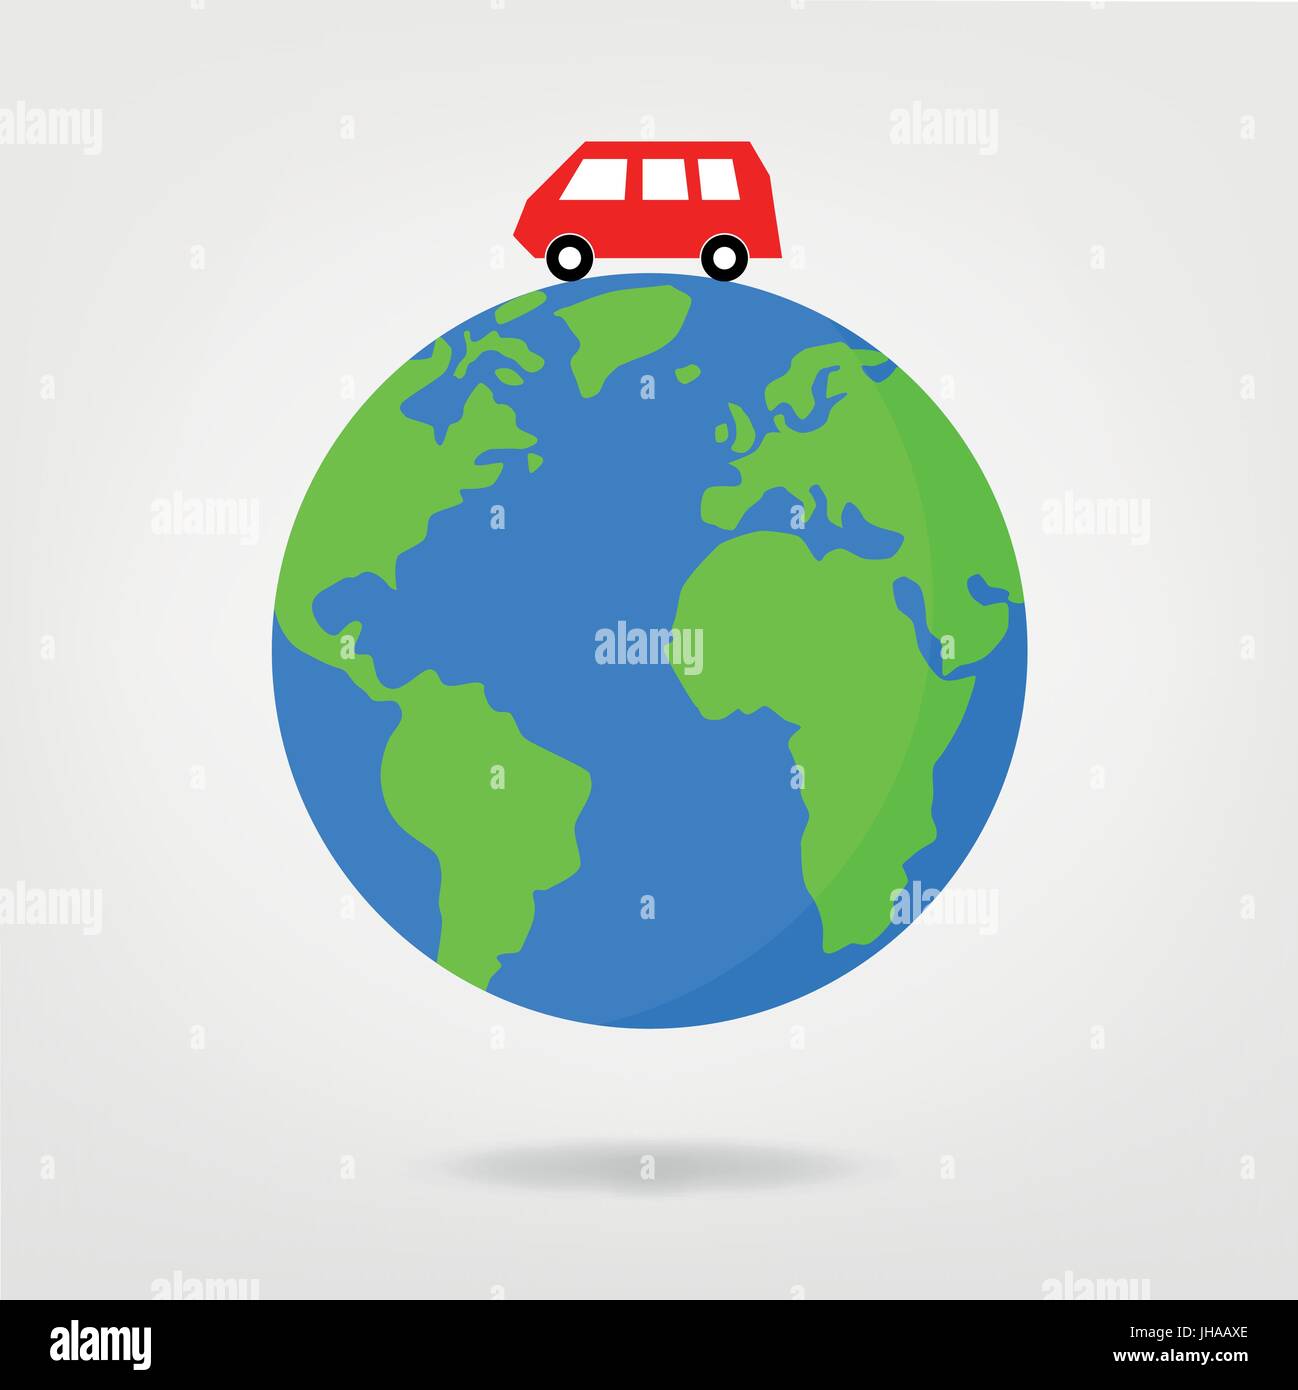 Reisen Sie mit dem Bus auf der ganzen Welt - Vektorgrafik Stockfoto